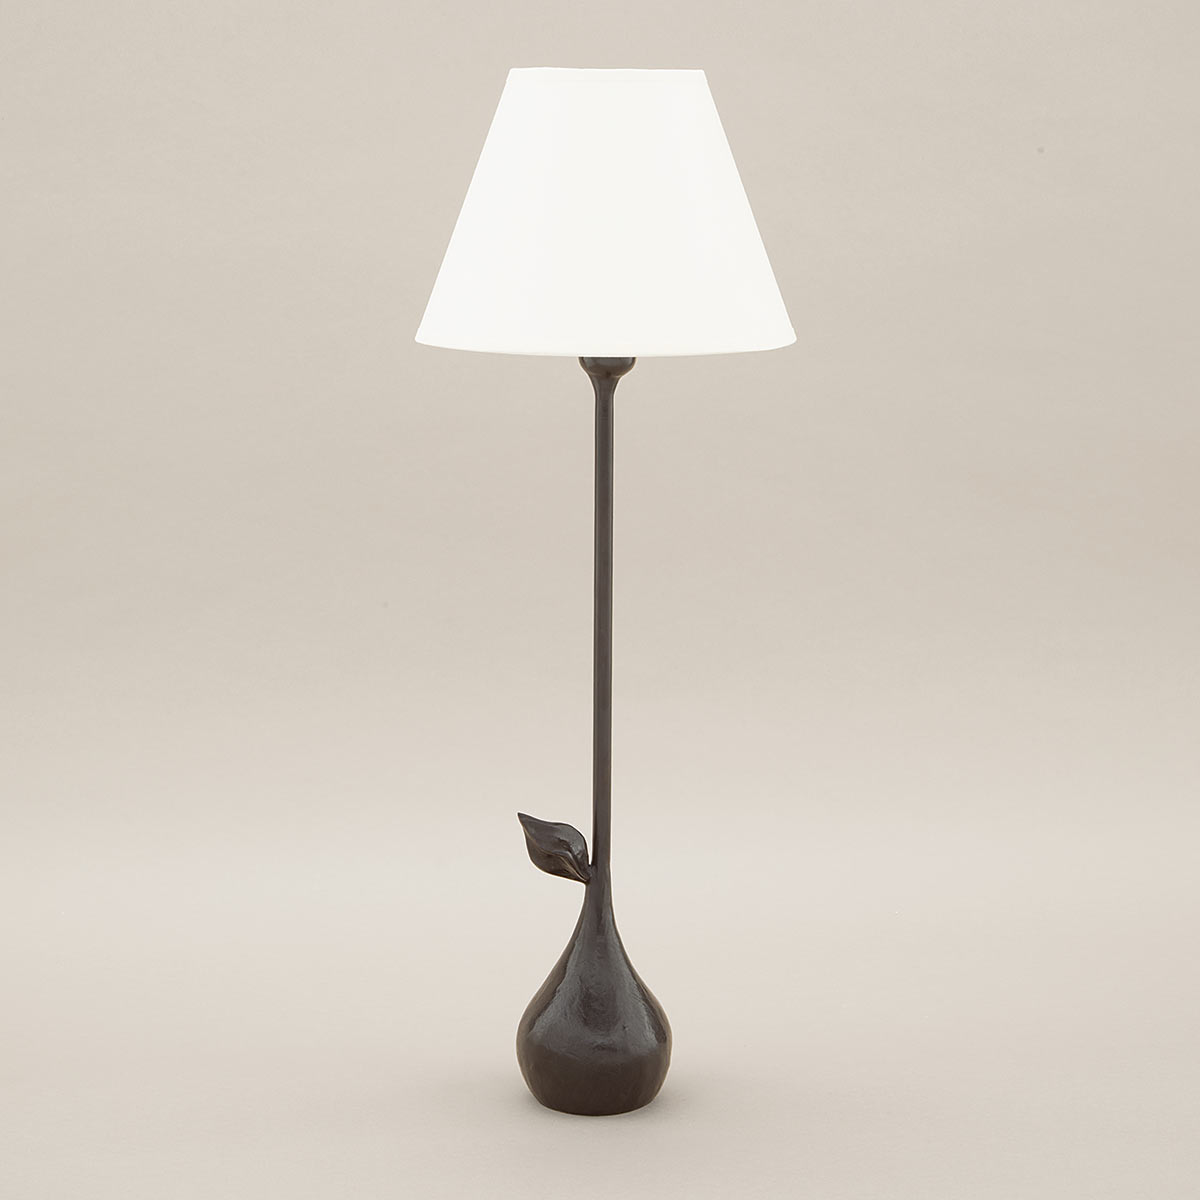 objet-insolite-clara-lampe-bronze-patine-Decoris-Interior_Design-Zurich.jpg